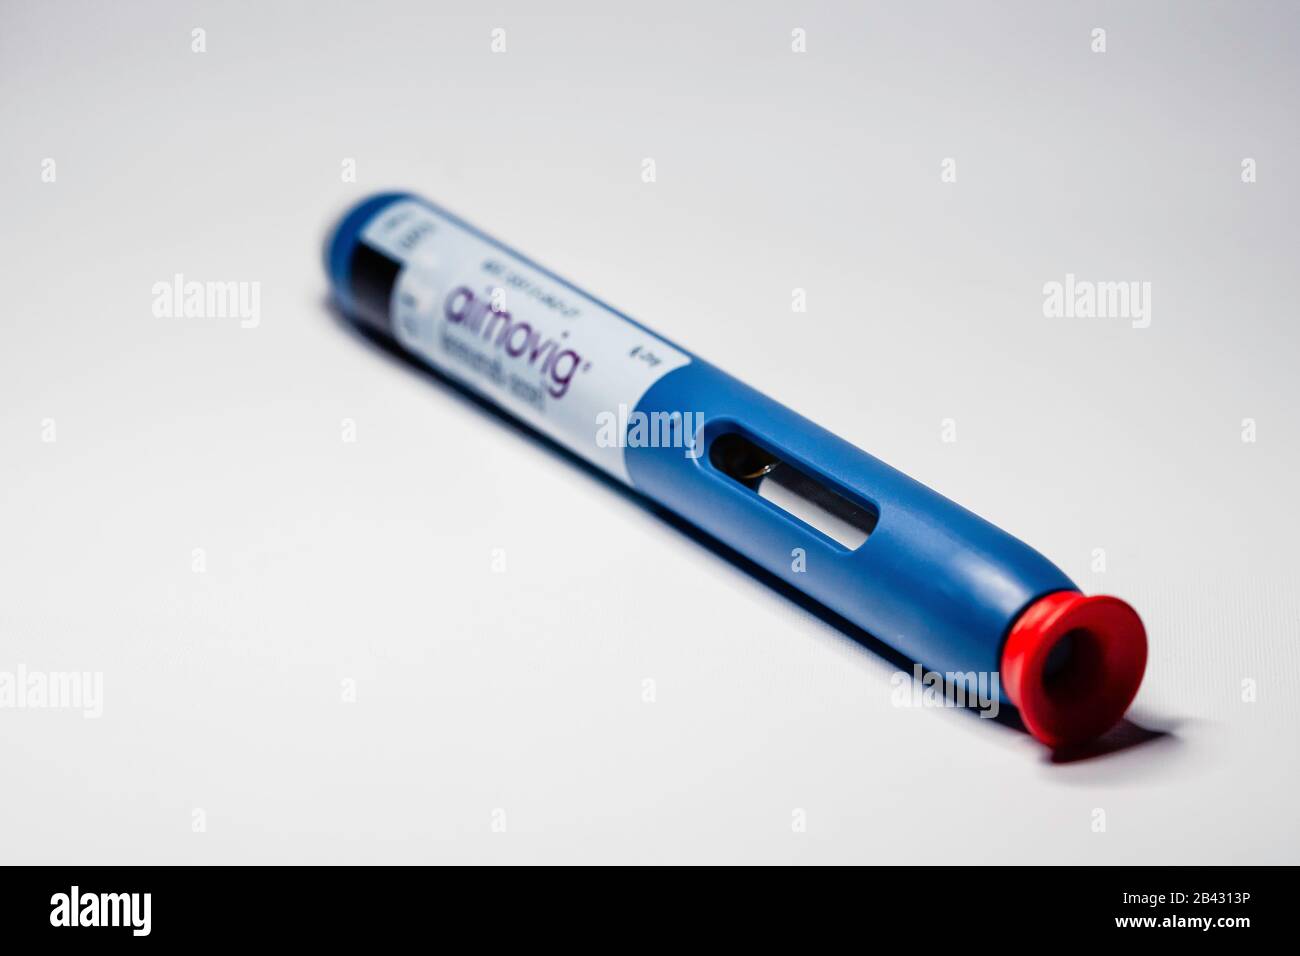 Aimovig (erenumab-aooe) 140 mg auto-injector device, prescription drug for migraine prevention, studio, color, United States Stock Photo